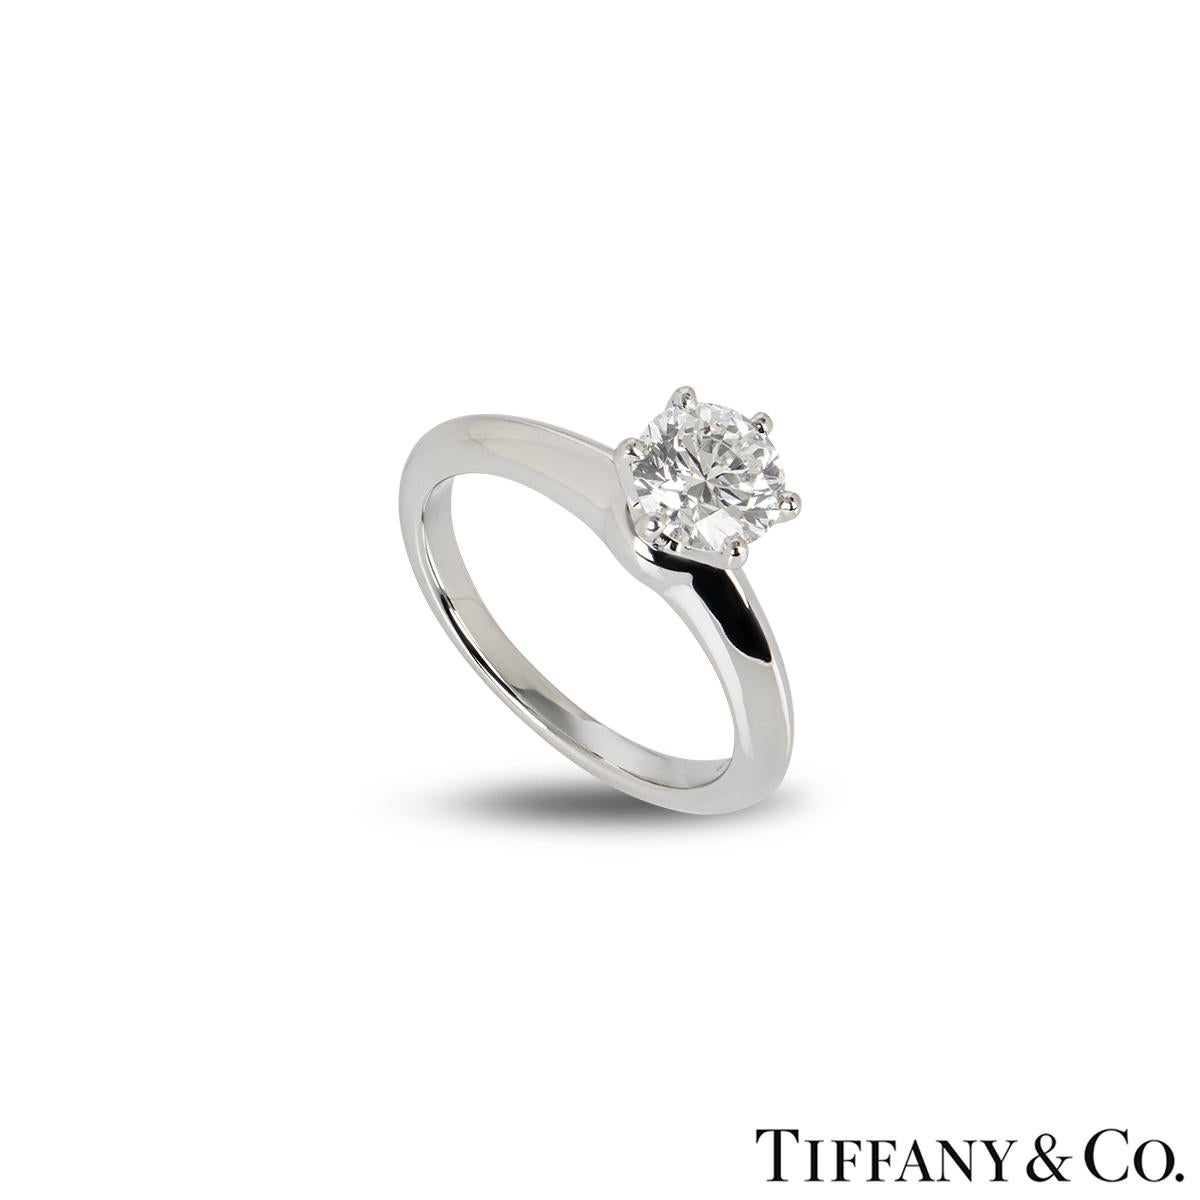 Une superbe bague en diamant Tiffany & Co en platine de la collection Tiffany Setting. La bague comprend un diamant rond de taille brillant d'un poids de 1,00ct, de couleur H et de pureté VVS1, serti dans l'emblématique monture à 6 griffes. Le